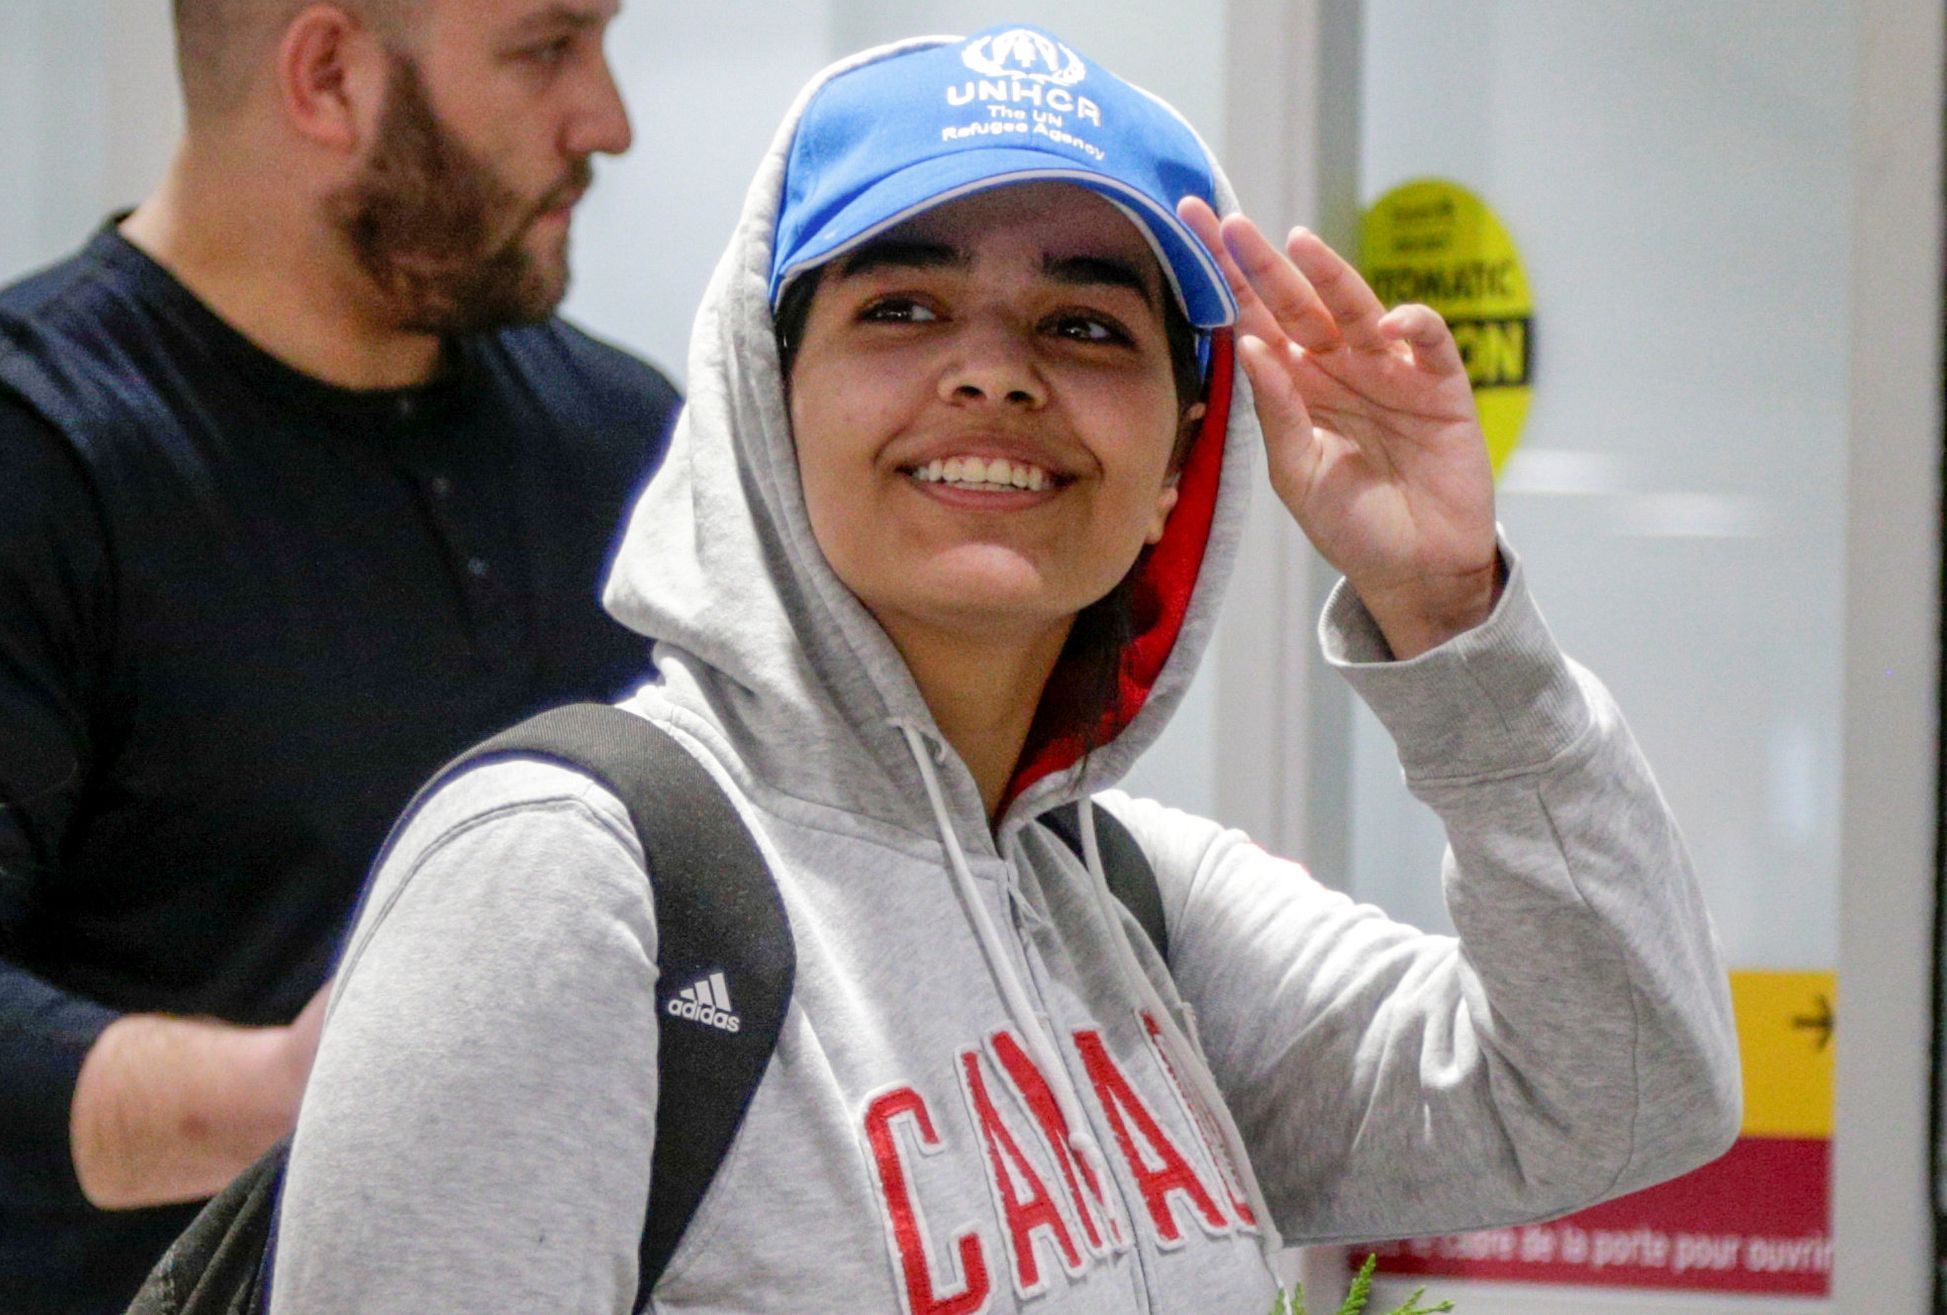 Osmnáctiletá Raháf Mohamed Kunúnová utekla ze Saúdské Arábie a od své rodiny.